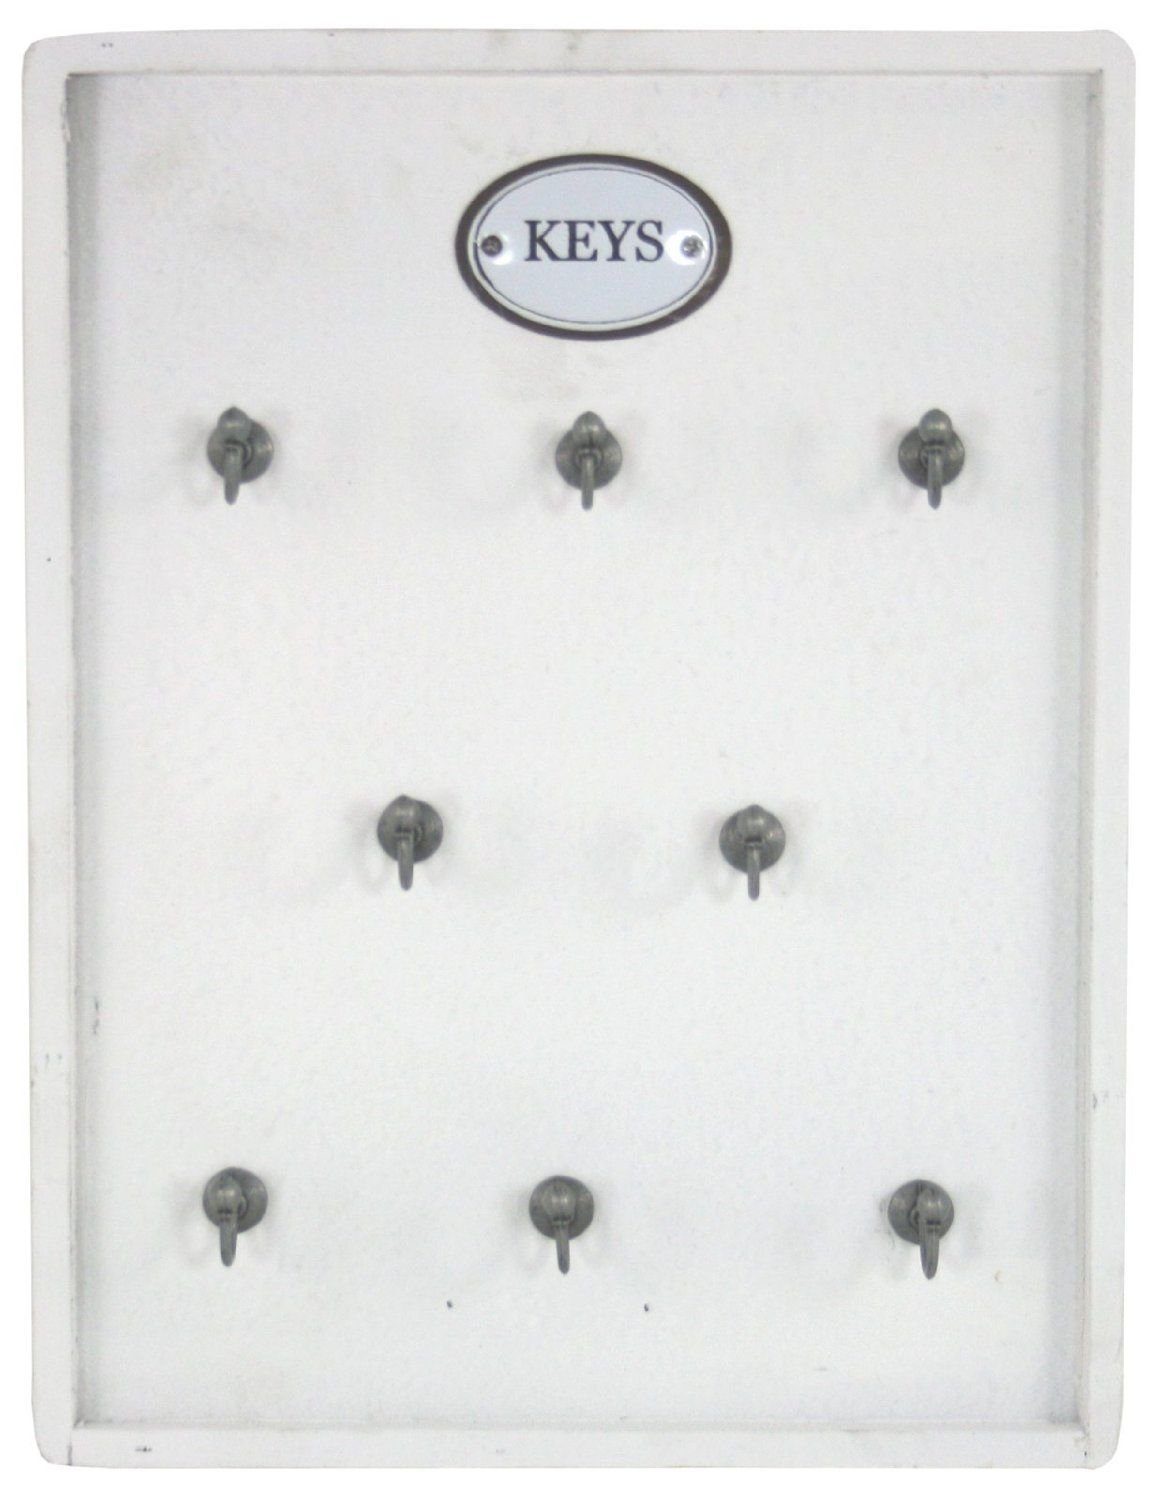 Moritz Schlüsselbrett 27x36cm Keys 8 Haken mit Rahmen weiß, Schlüsselkasten  Vintage Schlüsselbox Schlüsselleiste Schlüsselhaken